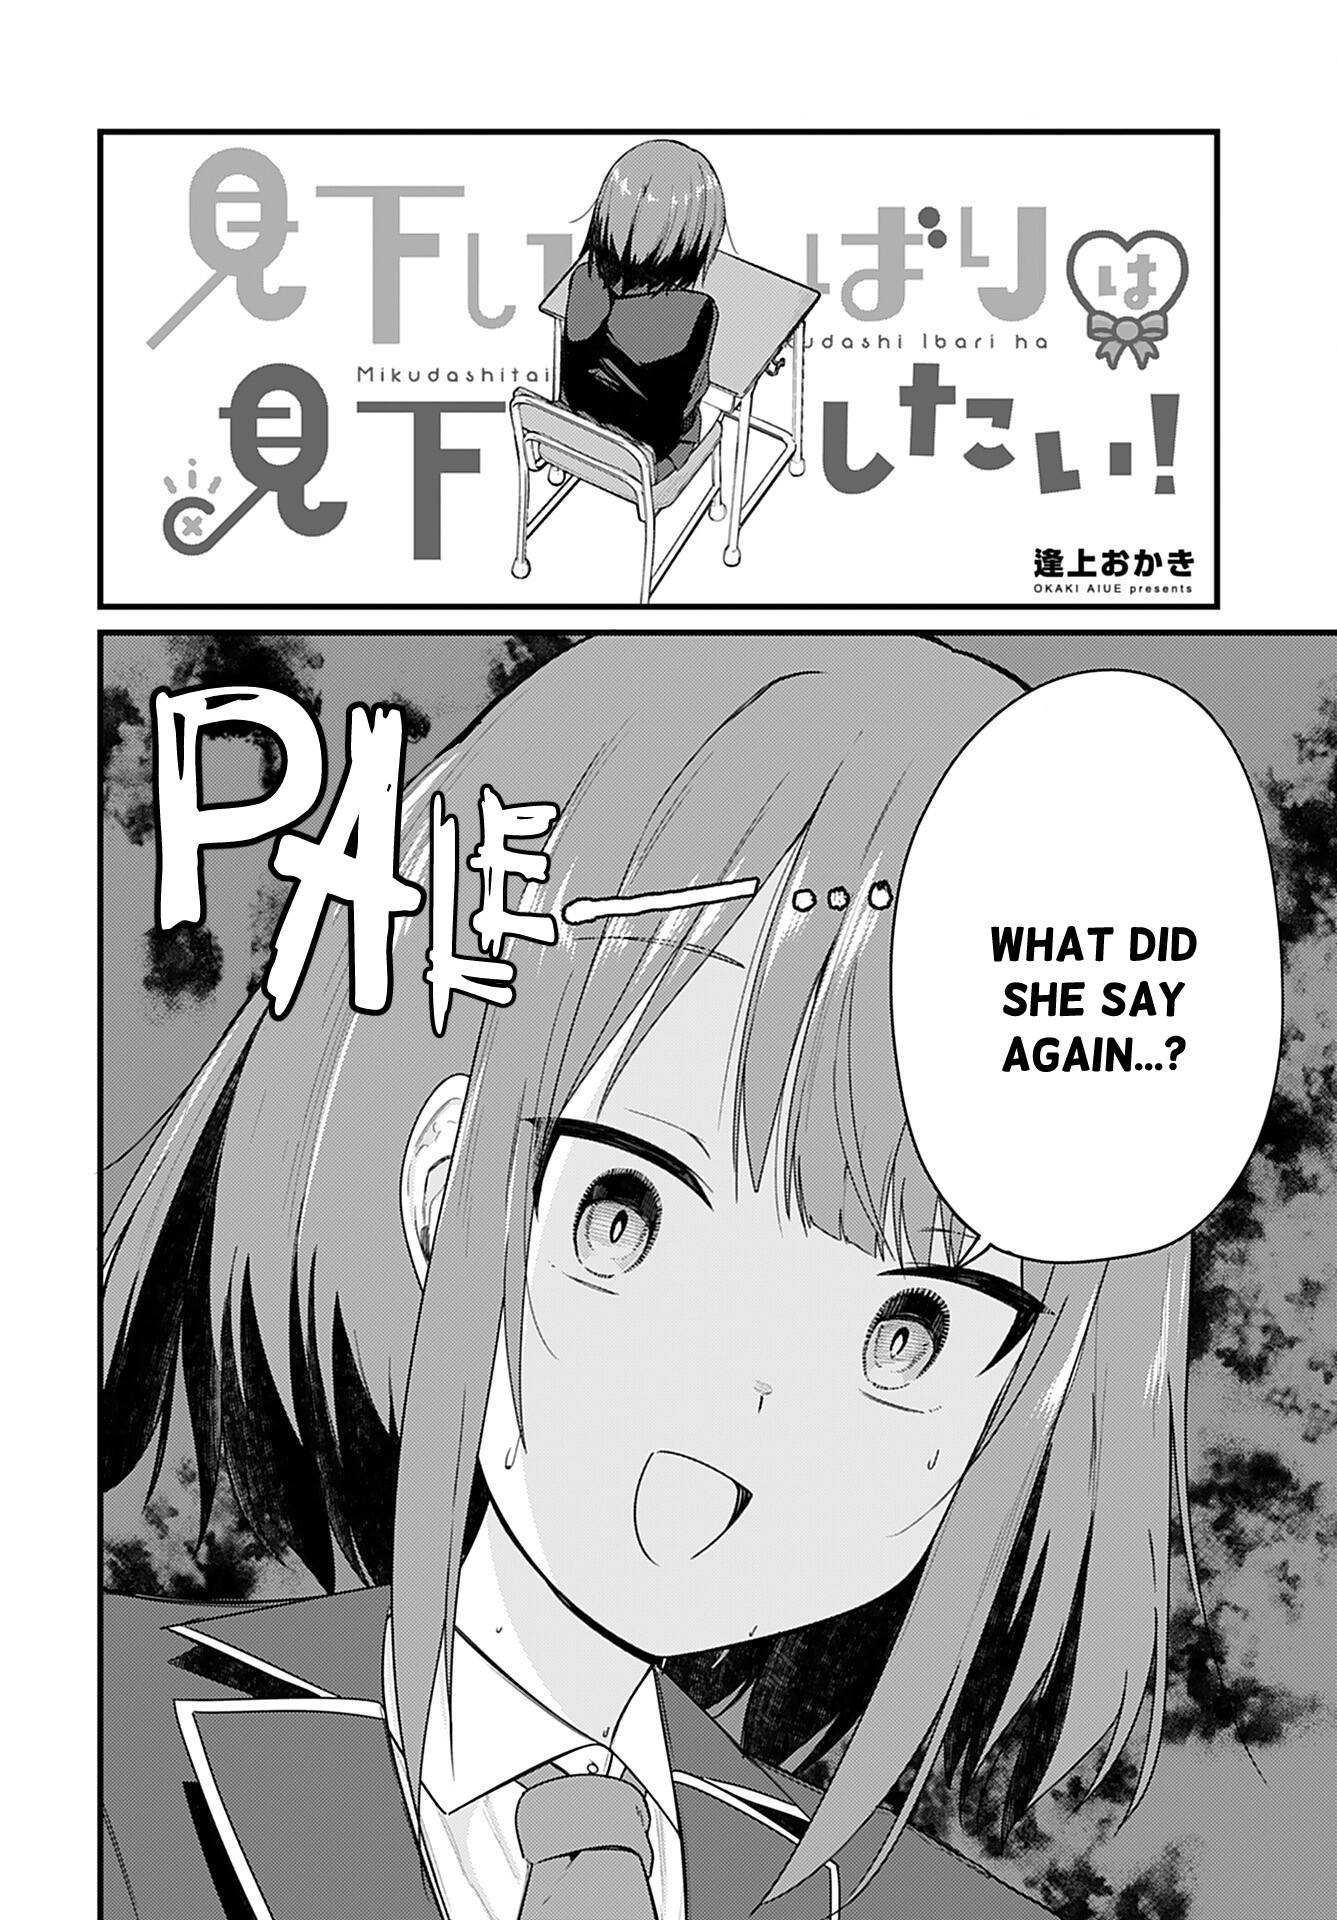 Mikudashi Ibari Ha Mikudashitai! - Page 2